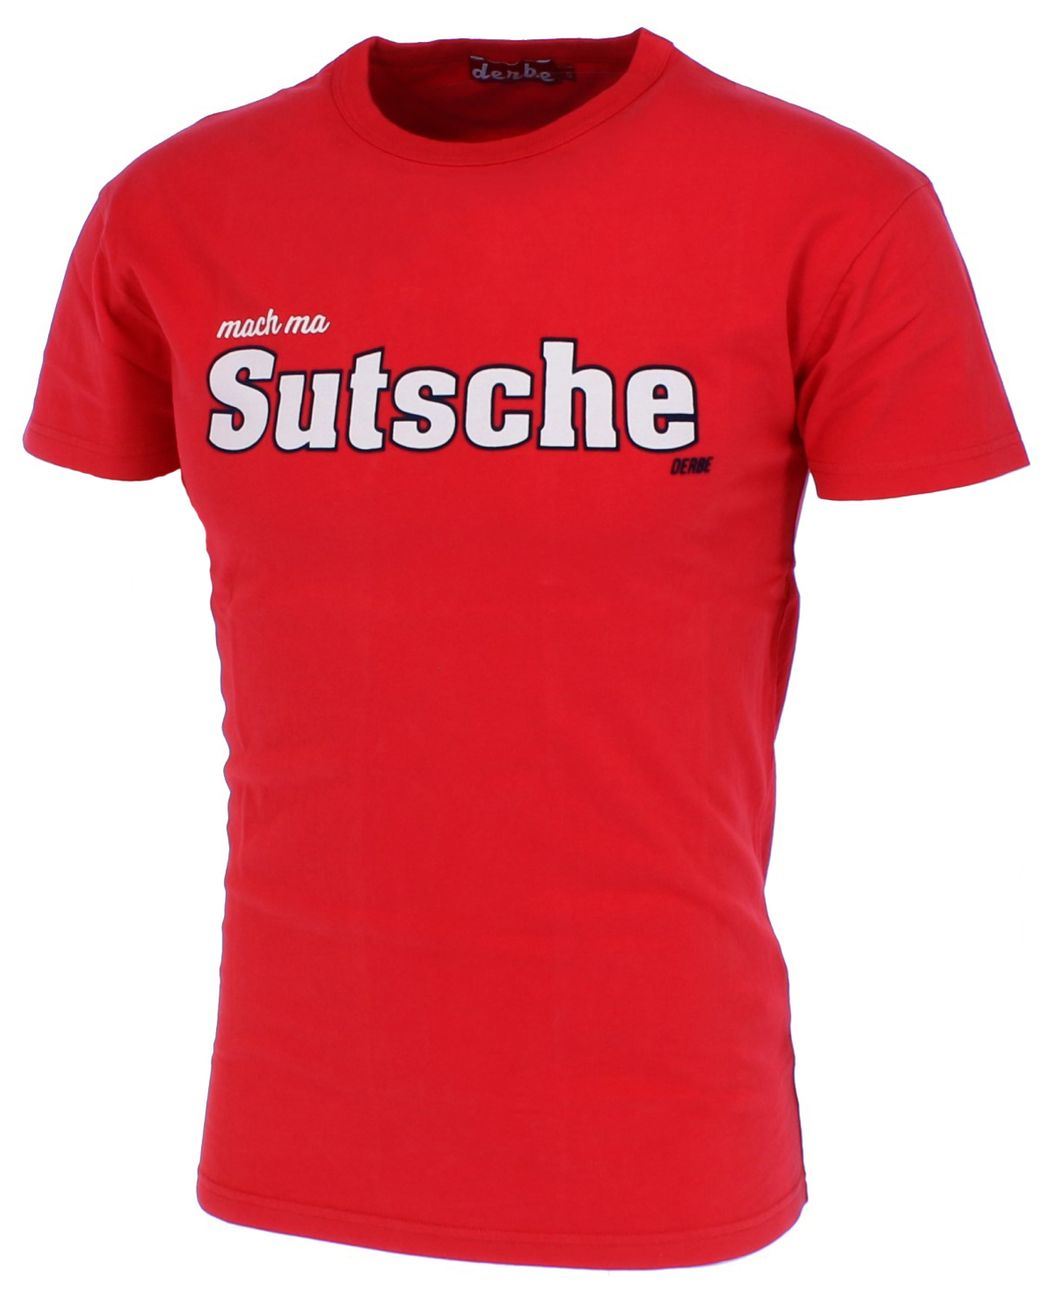 DERBE HAMBURG SUTSCHE BOYS Herren T-Shirt Bio-Baumwolle